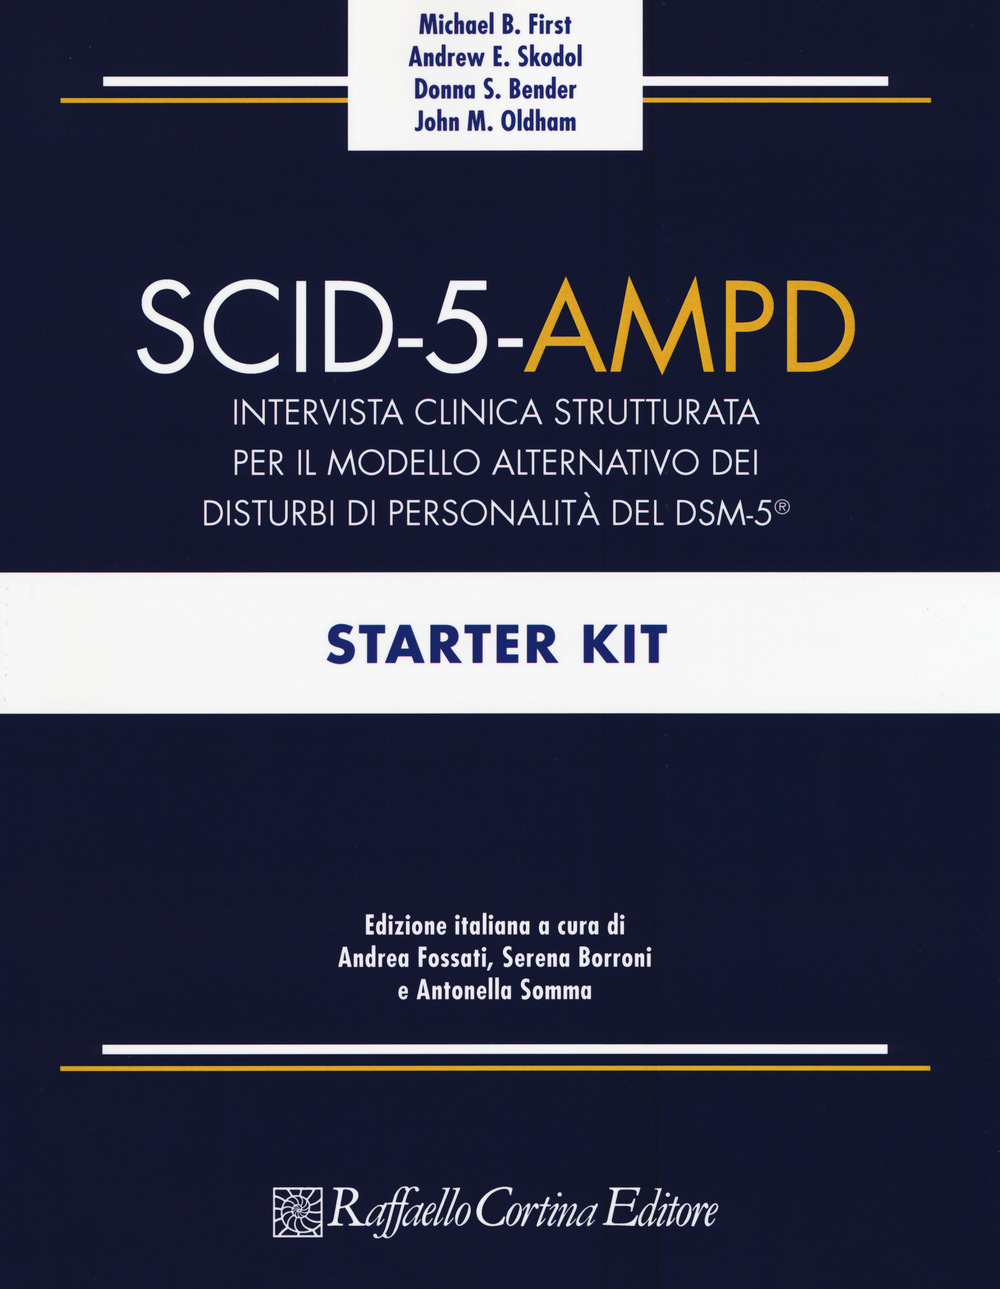 SCID-5-AMPD Starter Kit. Intervista clinica strutturata per il Modello Alternativo dei disturbi di Personalità del DSM-5